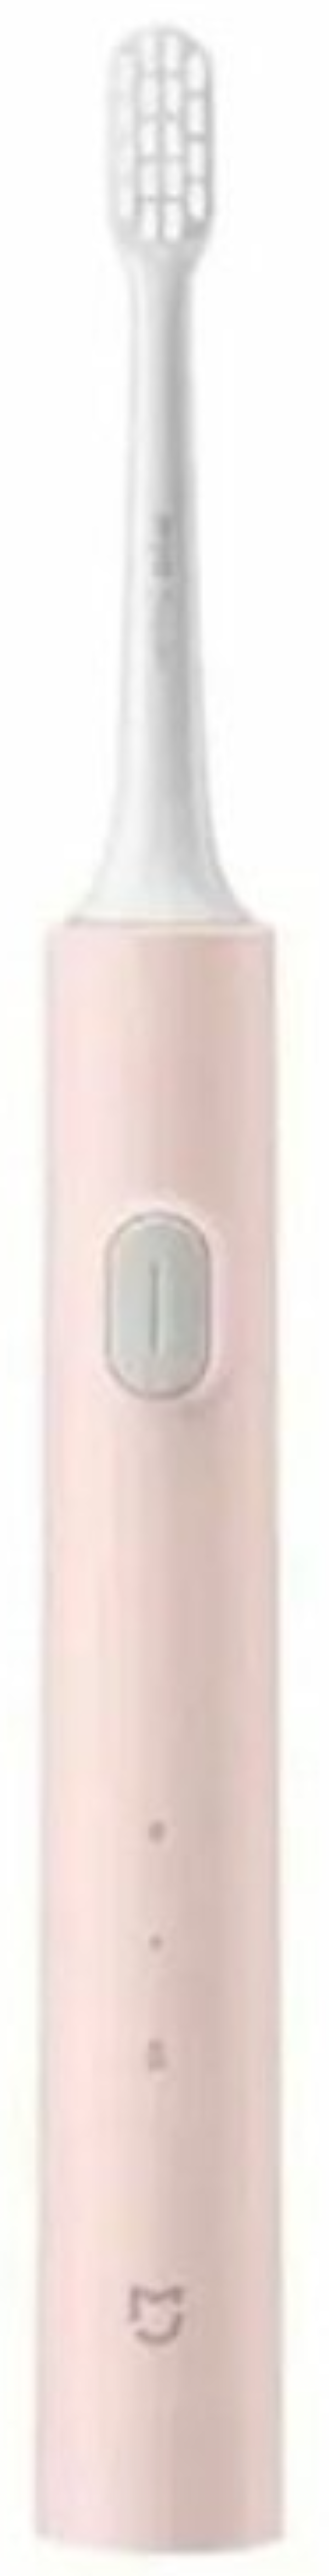 Электрическая зубная щётка Xiaomi MiJia T200 Sonic Electric Toothbrush, розовый